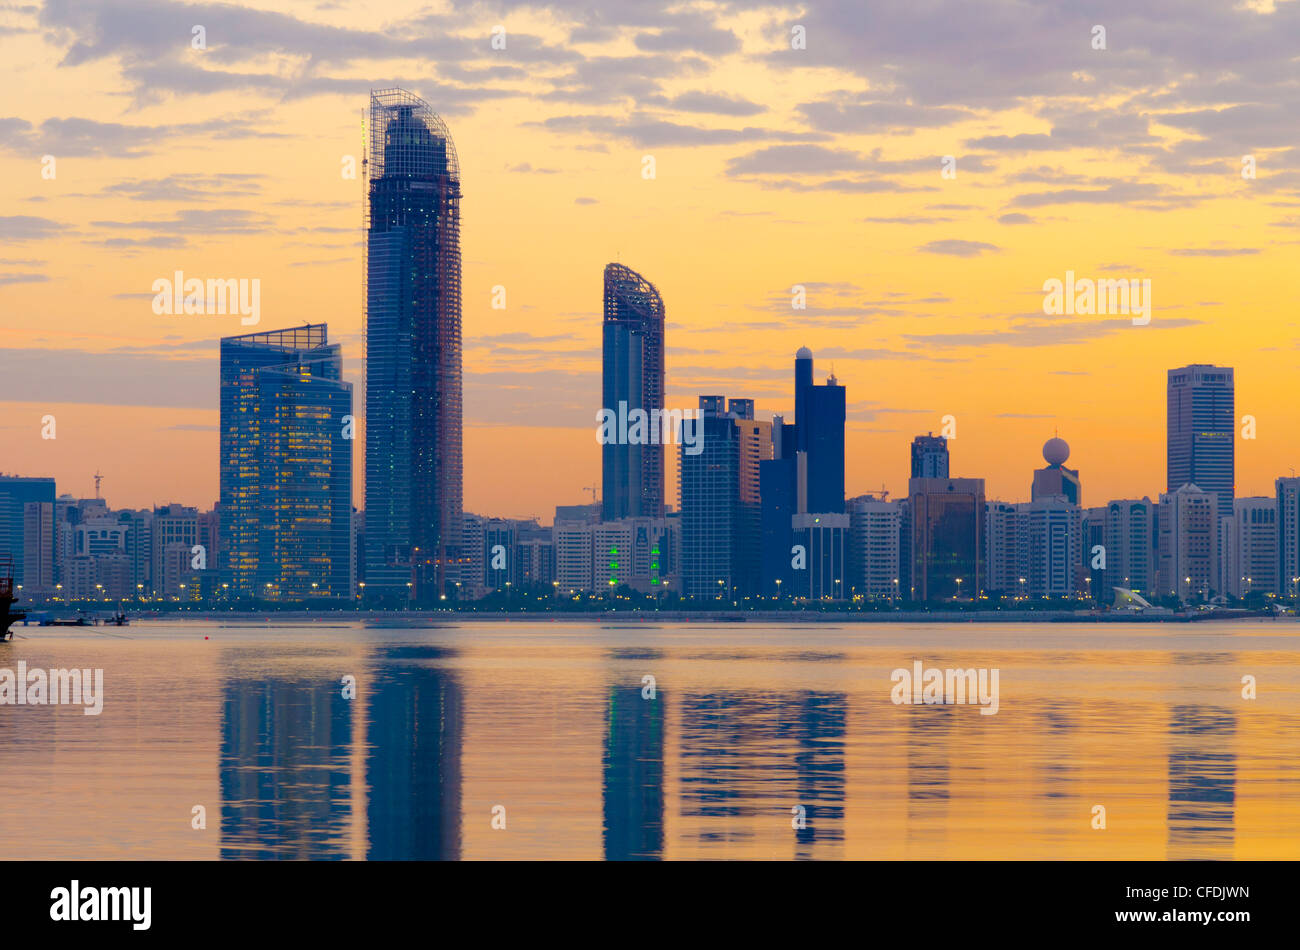 City skyline at dawn, Abu Dhabi, United Arab Emirates, Middle East Stock Photo